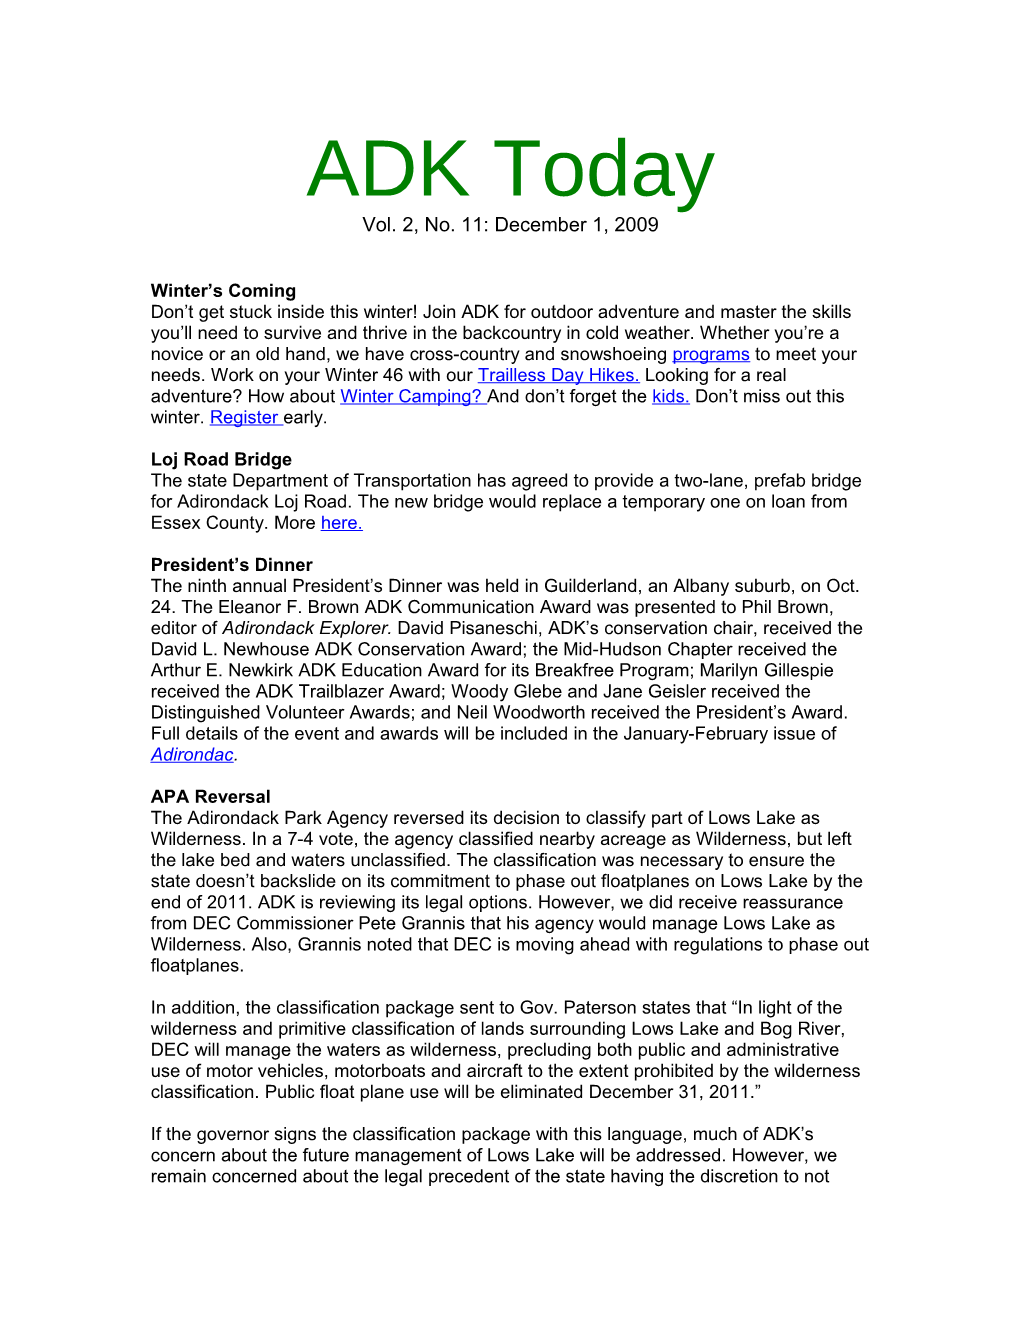 ADK Today Vol. 2, No. 11: December 1, 2009